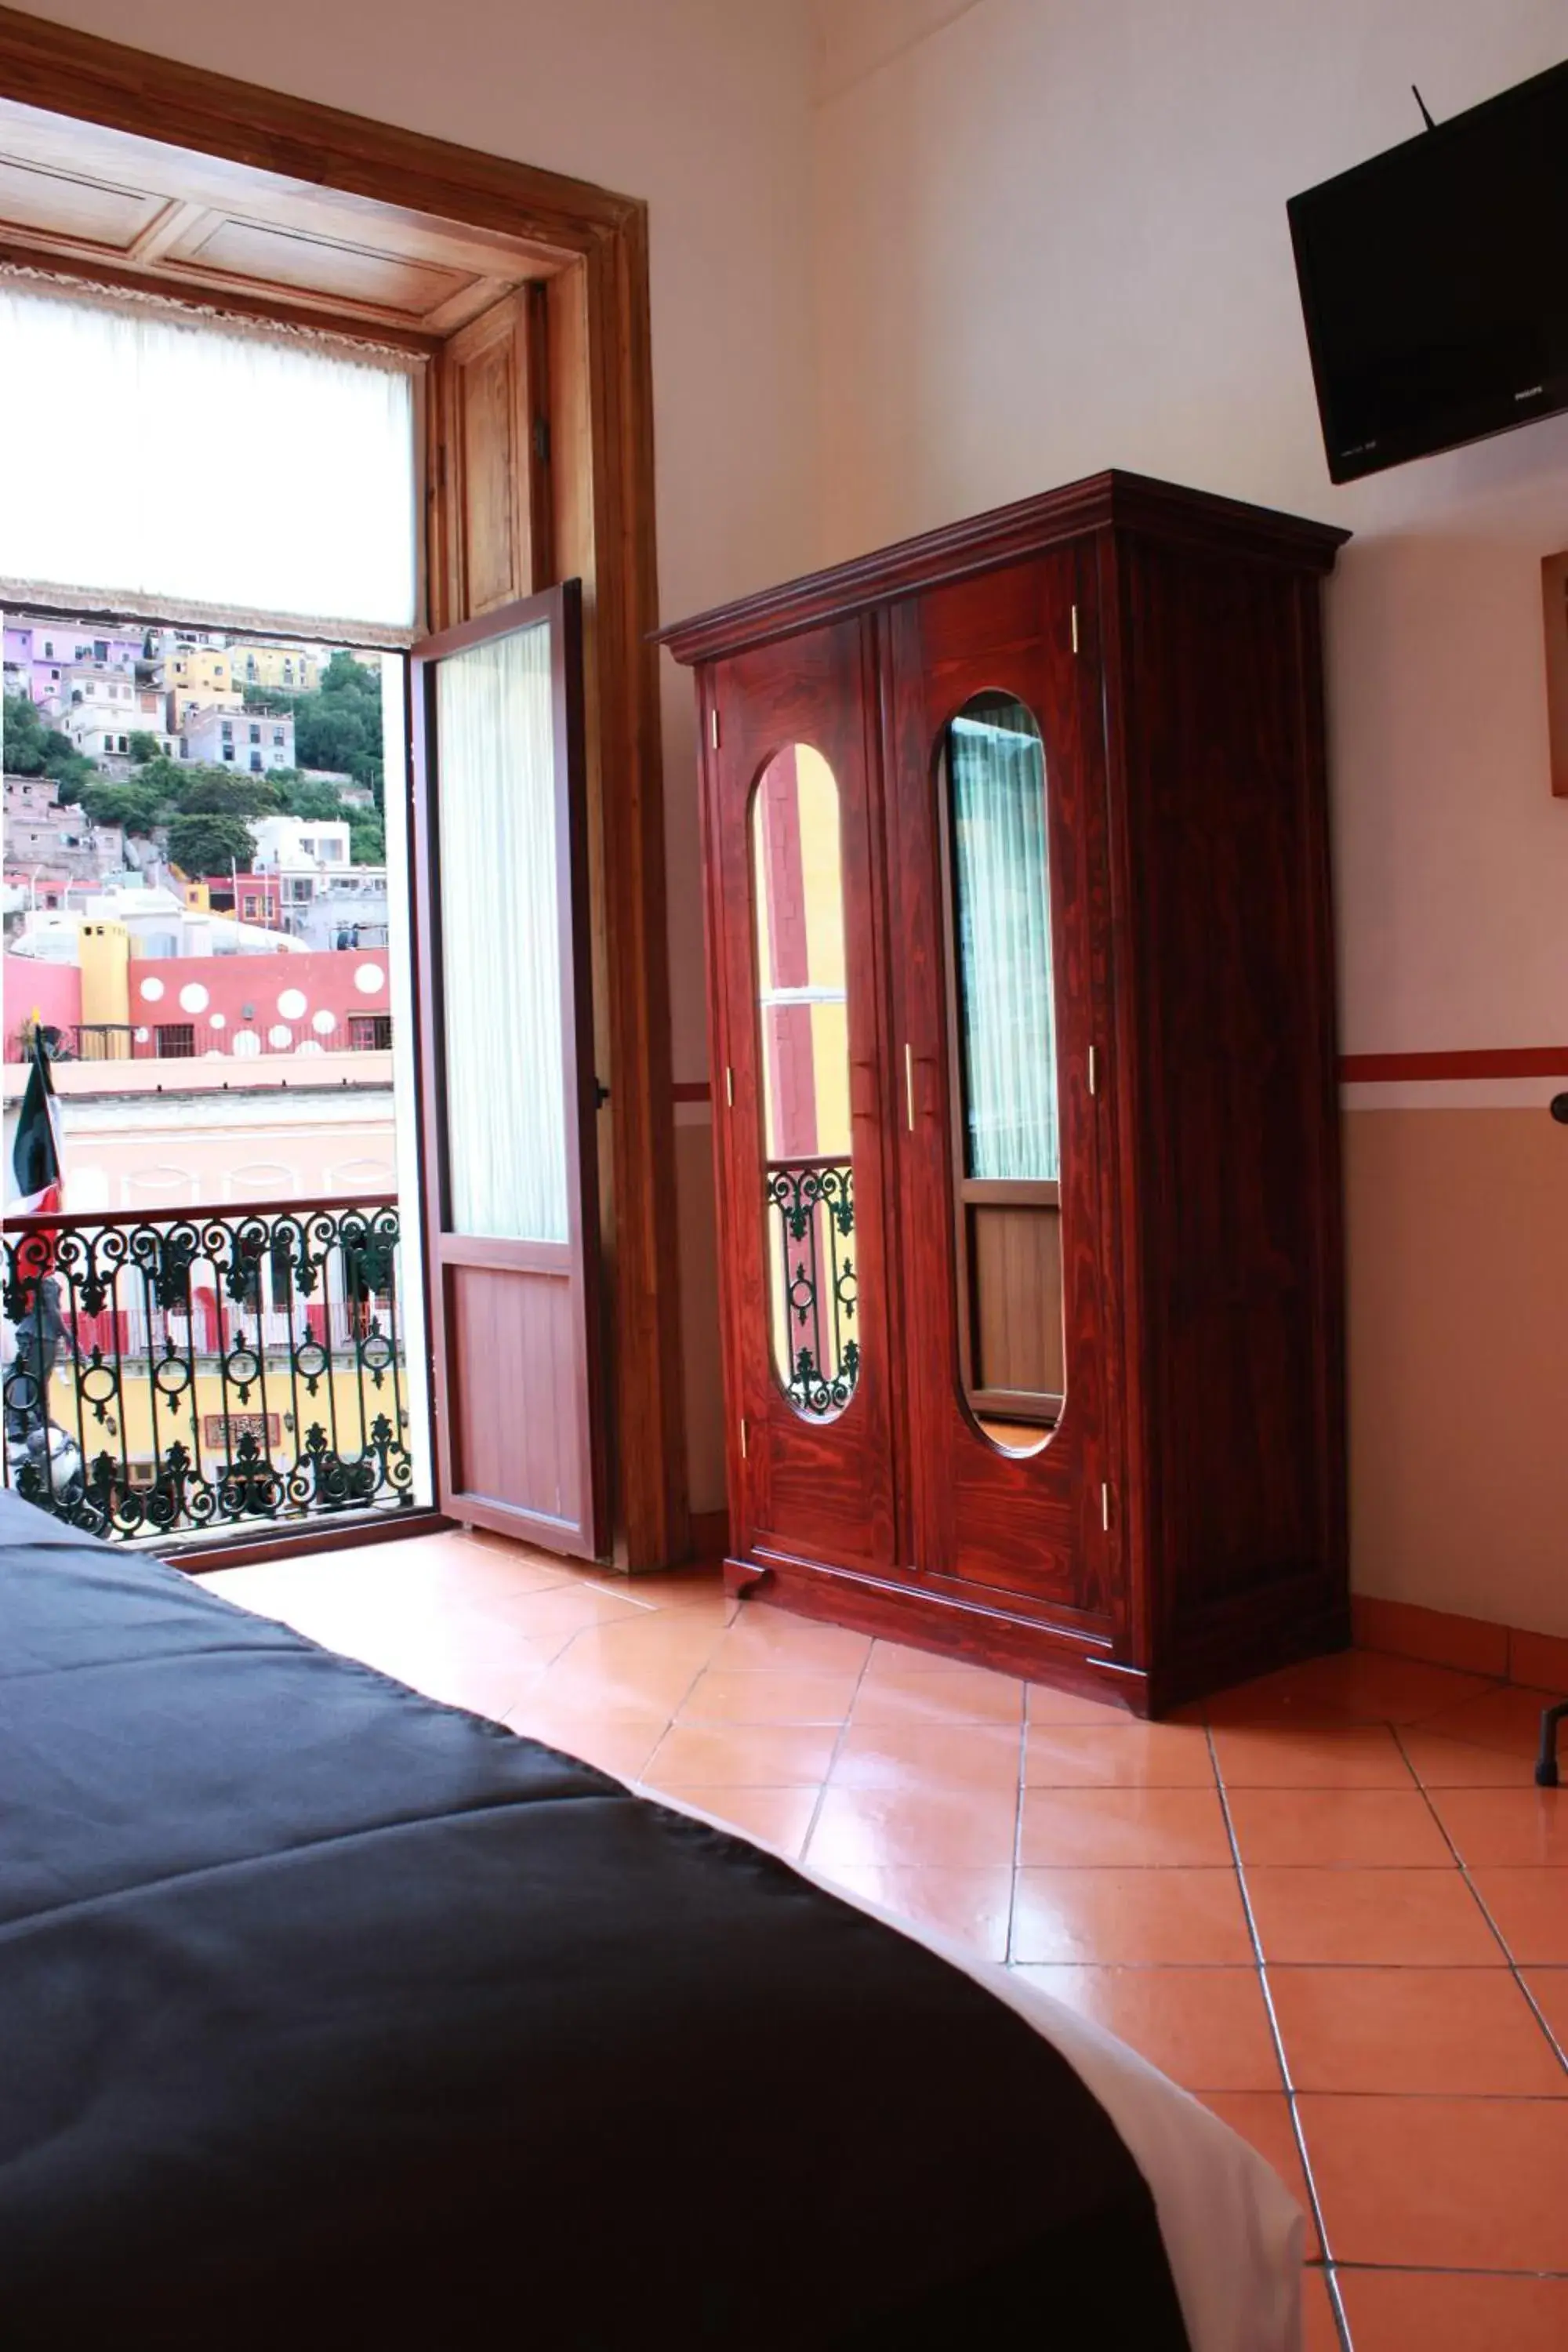 Photo of the whole room in Hotel de la Paz